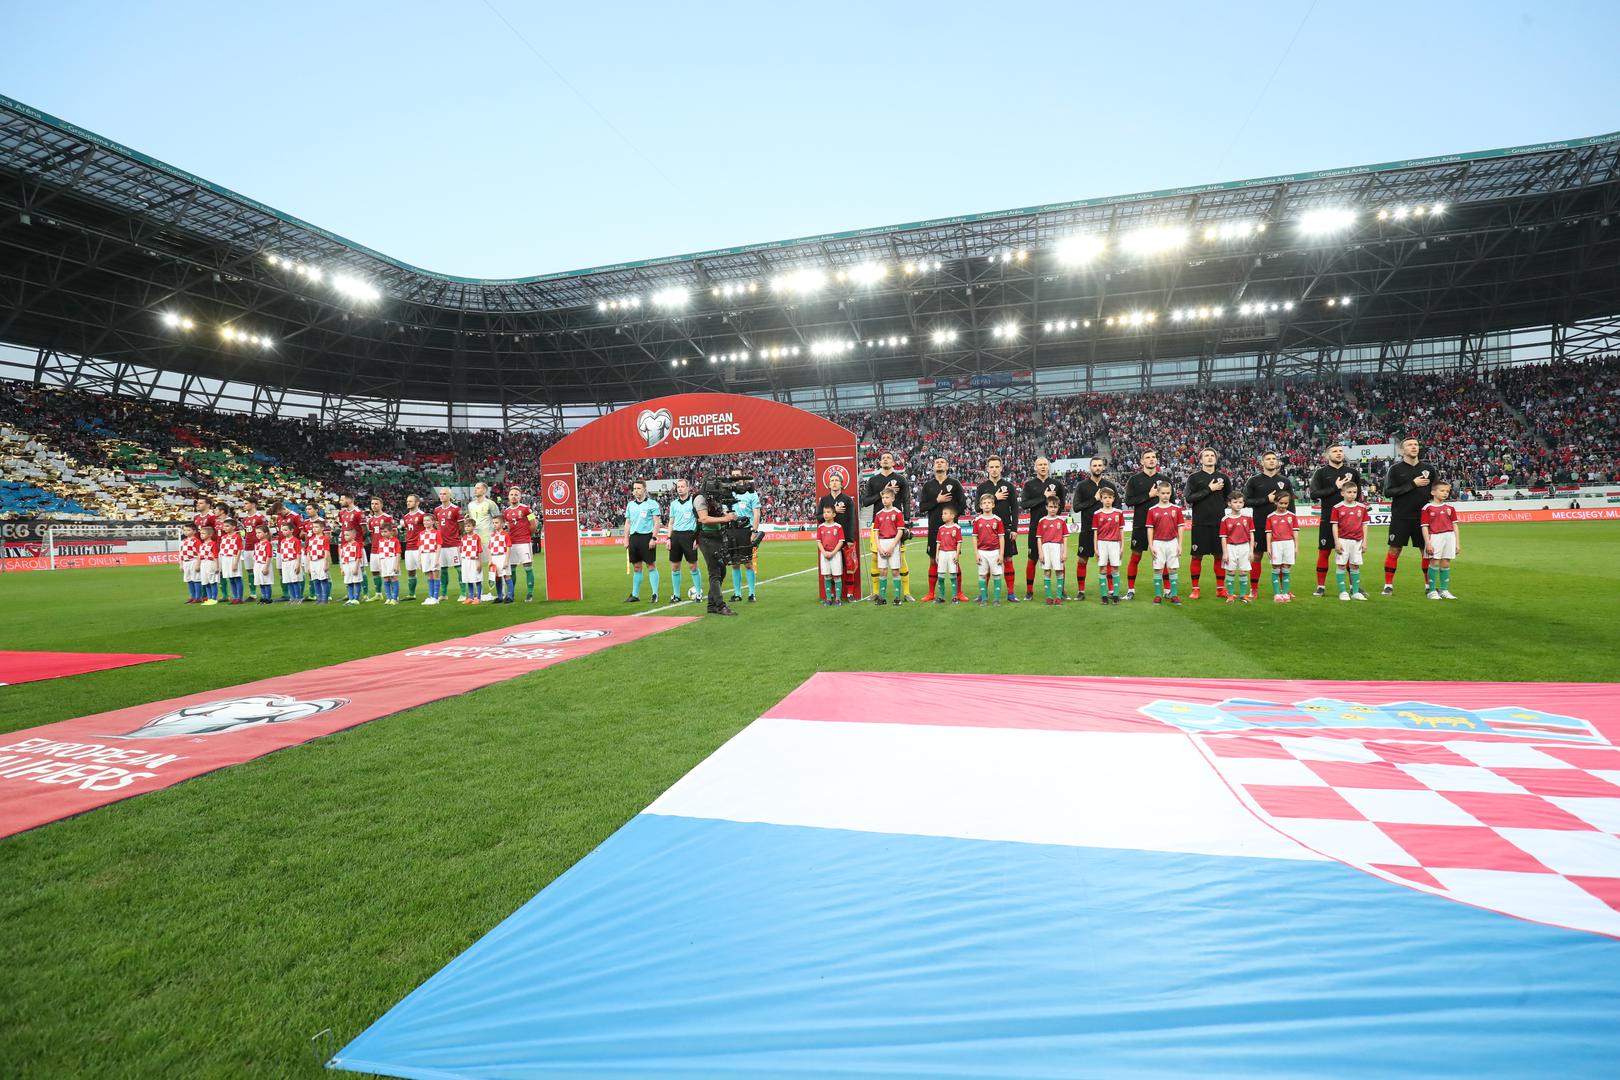 Predsjednik HNS-a Davor Šuker najavio kako će se u zagrebačkom naselju Blato izgraditi novi nacionalni stadion